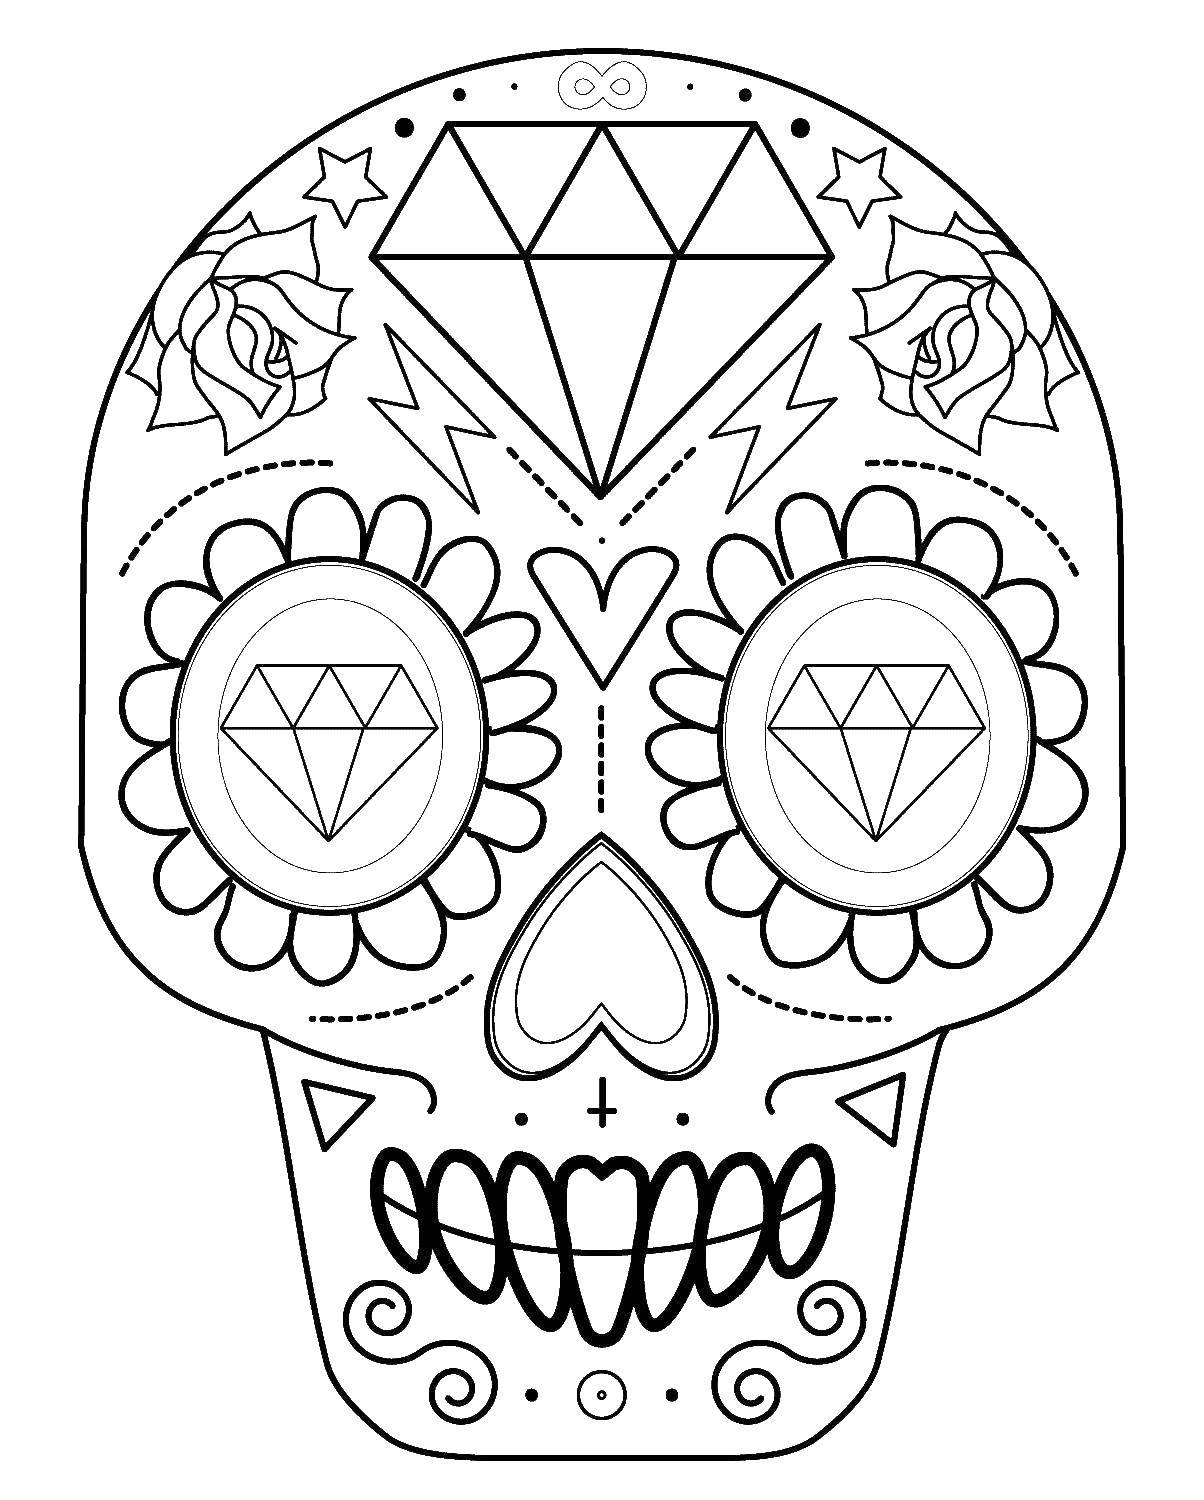 Coloring Skull. Category Skull. Tags:  skull, patterns, diamonds.